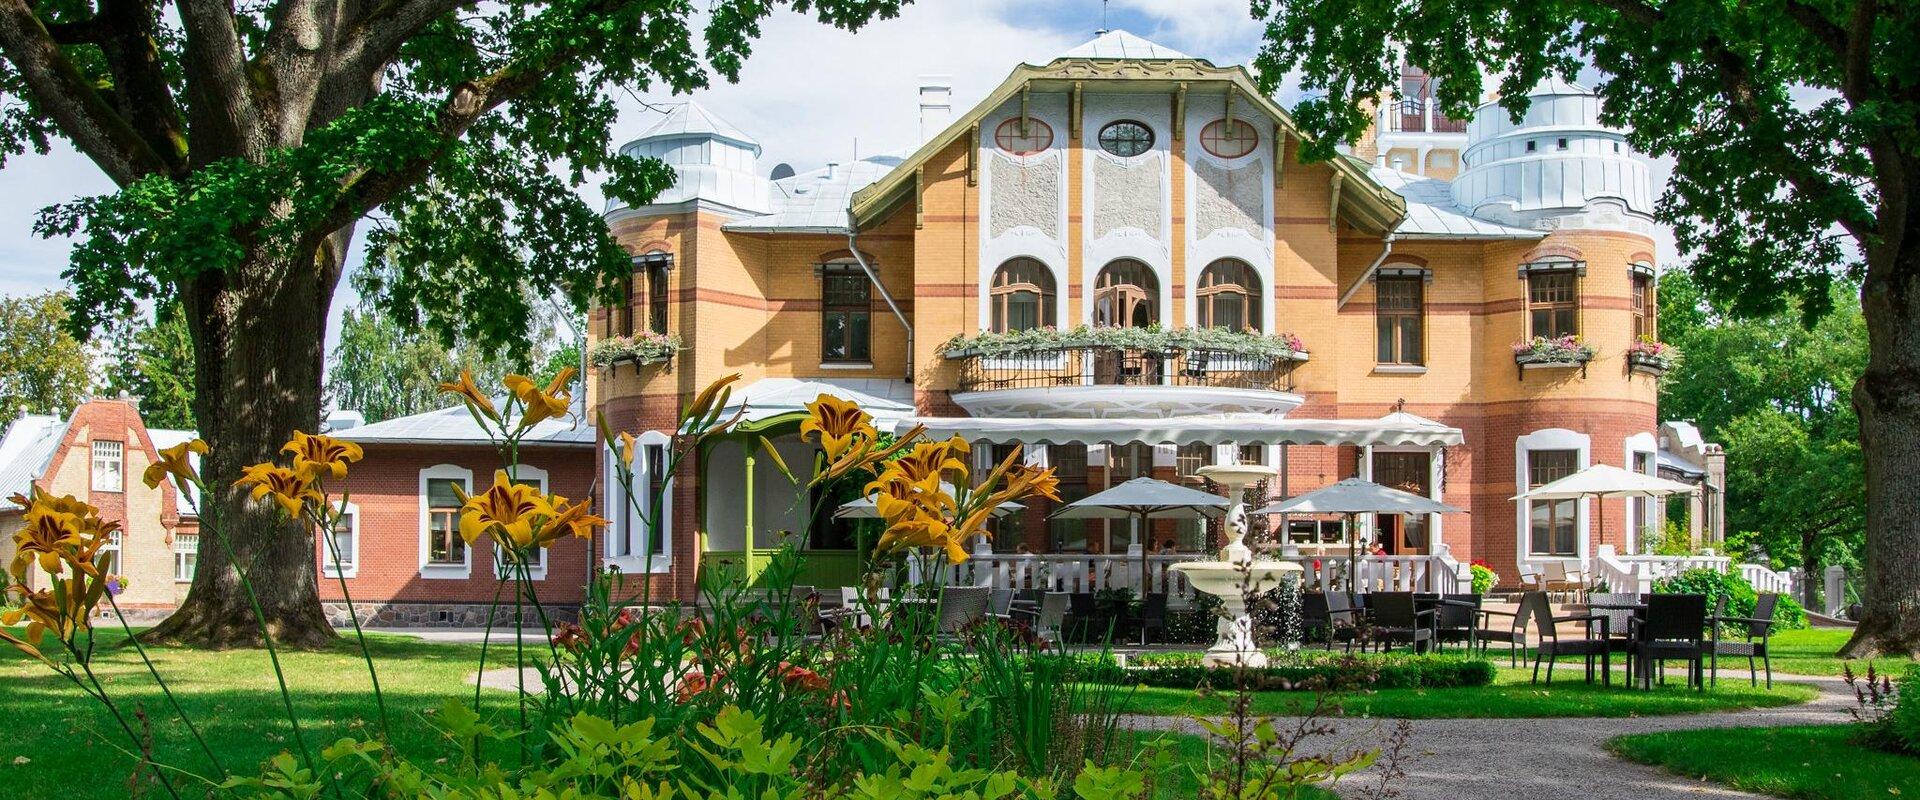 Villa Ammende Hotell